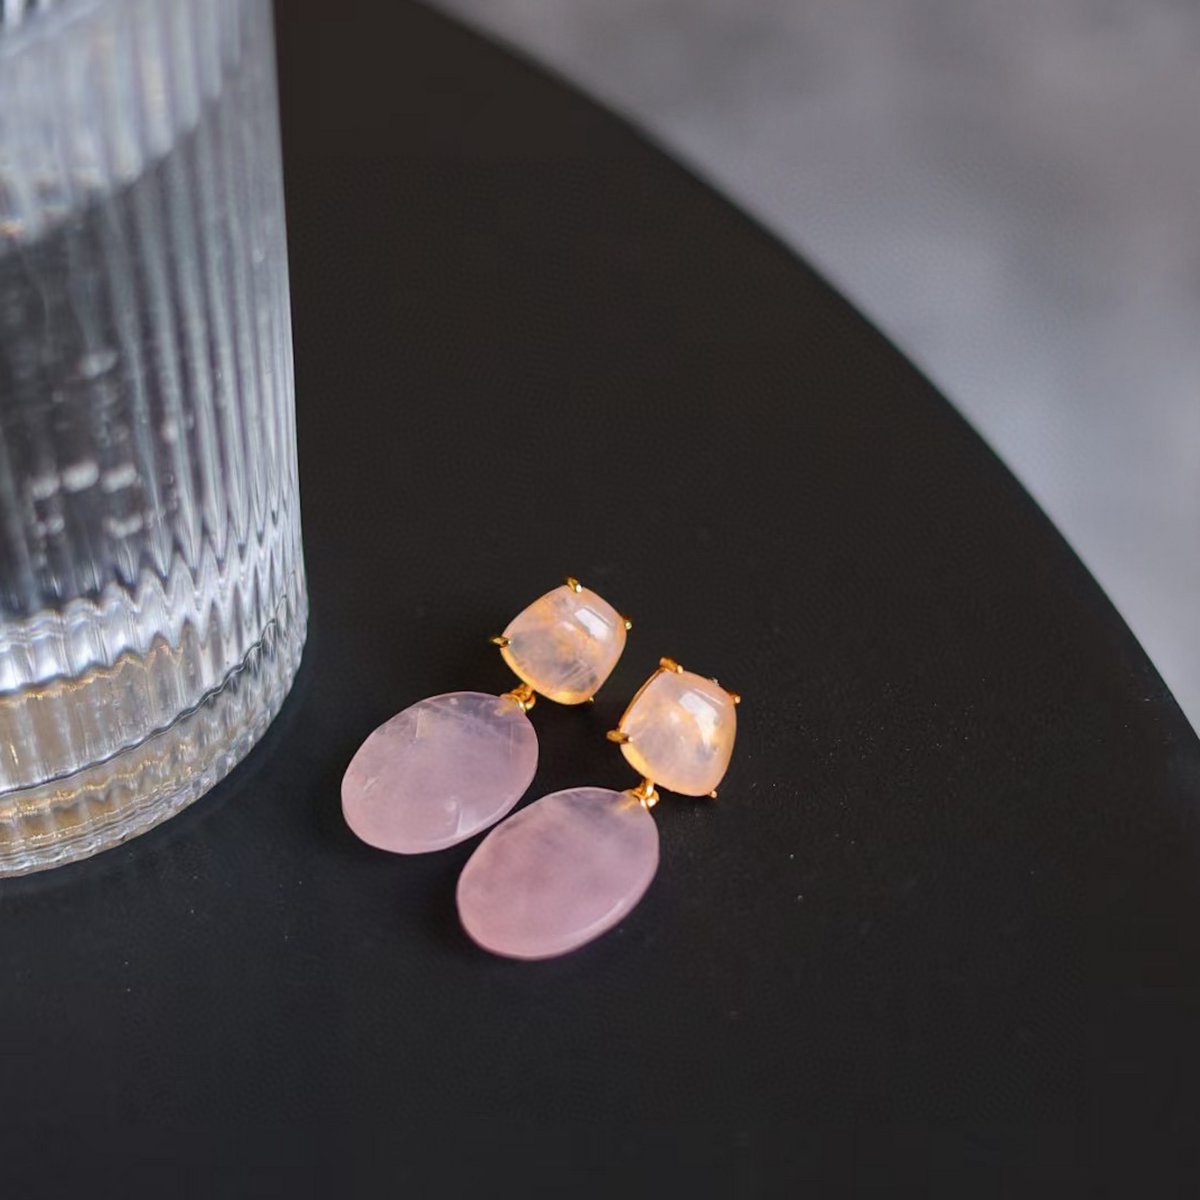 Romantische oorbellen in rozenkwartskristal in prinsesstijl - Goud vermeil - Steen van de liefde